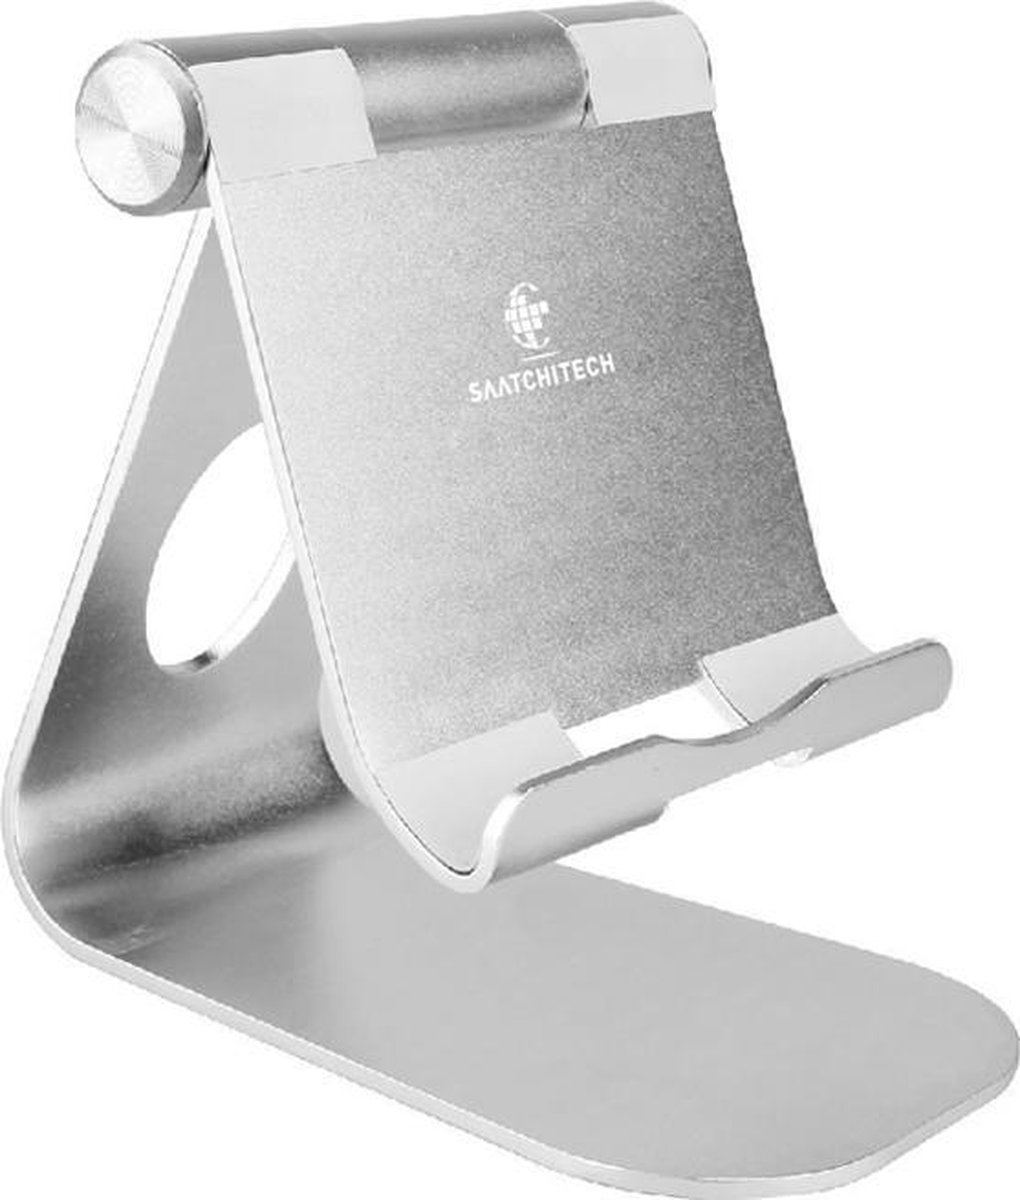 Aluminium standaard voor tablet / mobiele telefoon standaard | inklapbaar en handzaam | zilver |Makkelijk Verstelbaar | Compact lichtgewicht tablet standaard